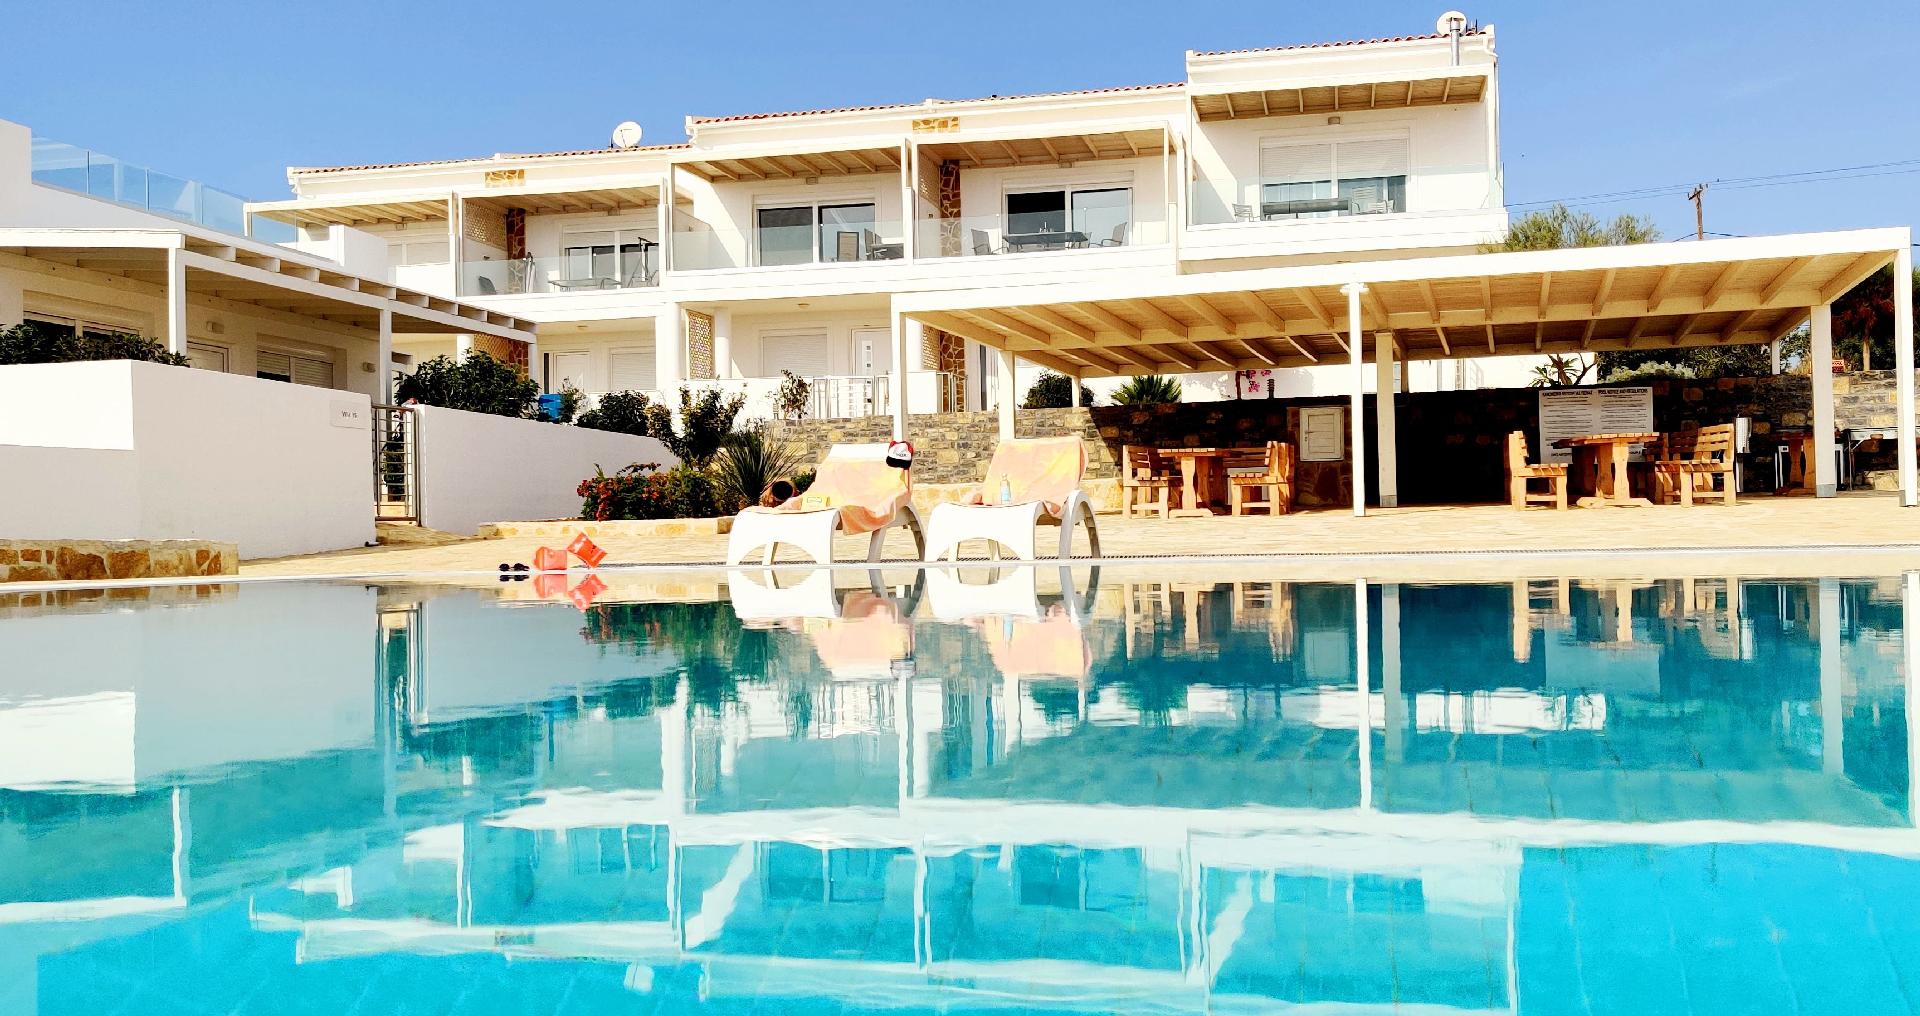 Ferienhaus für 4 Personen ca. 97 m² in A Ferienhaus in Griechenland